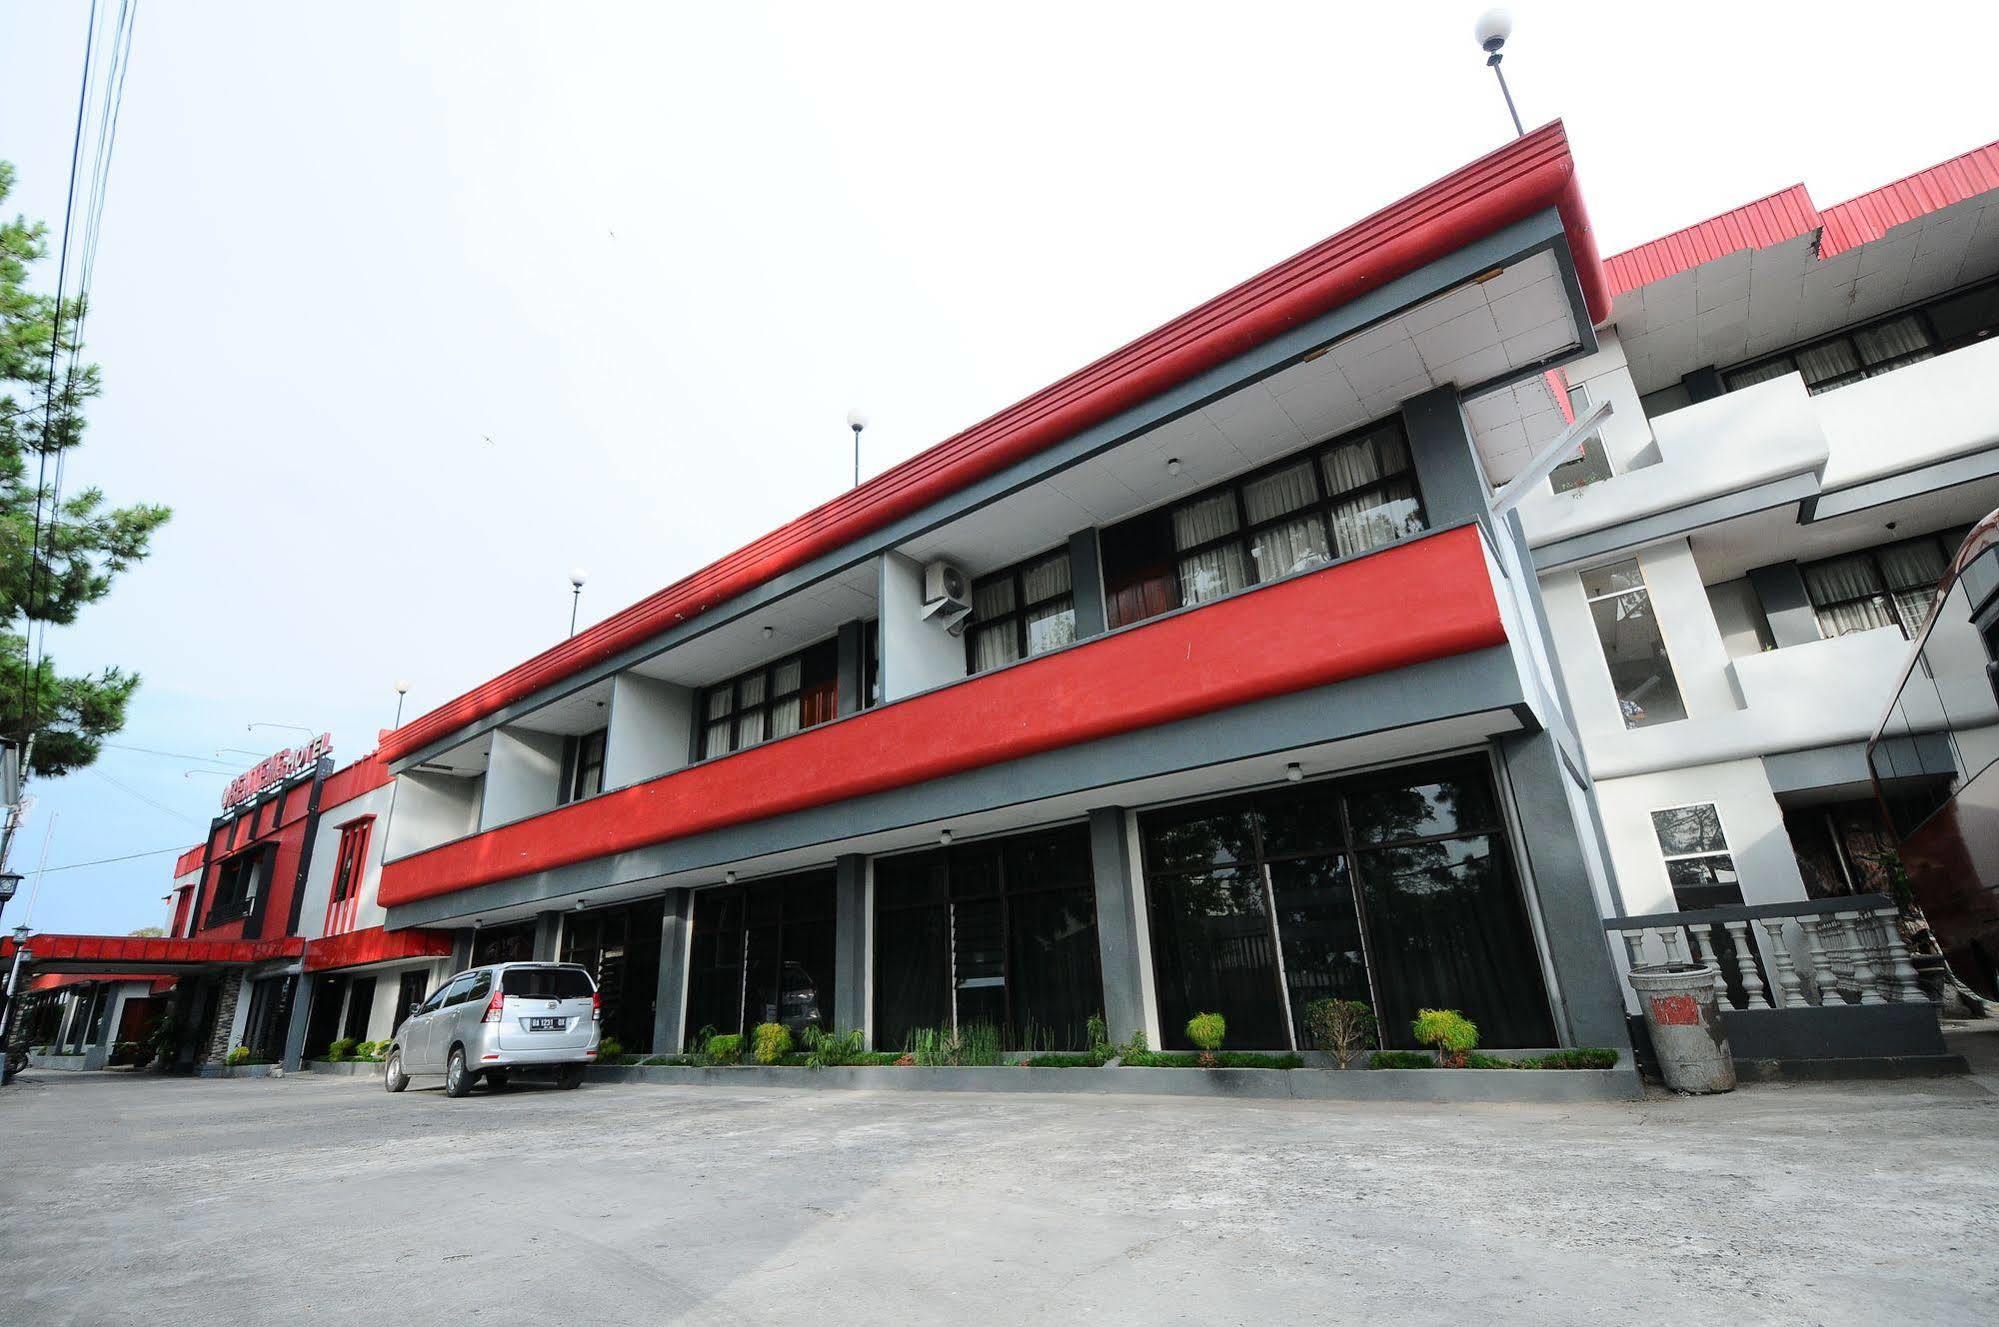 Benteng Hotel Bukittinggi Exteriér fotografie